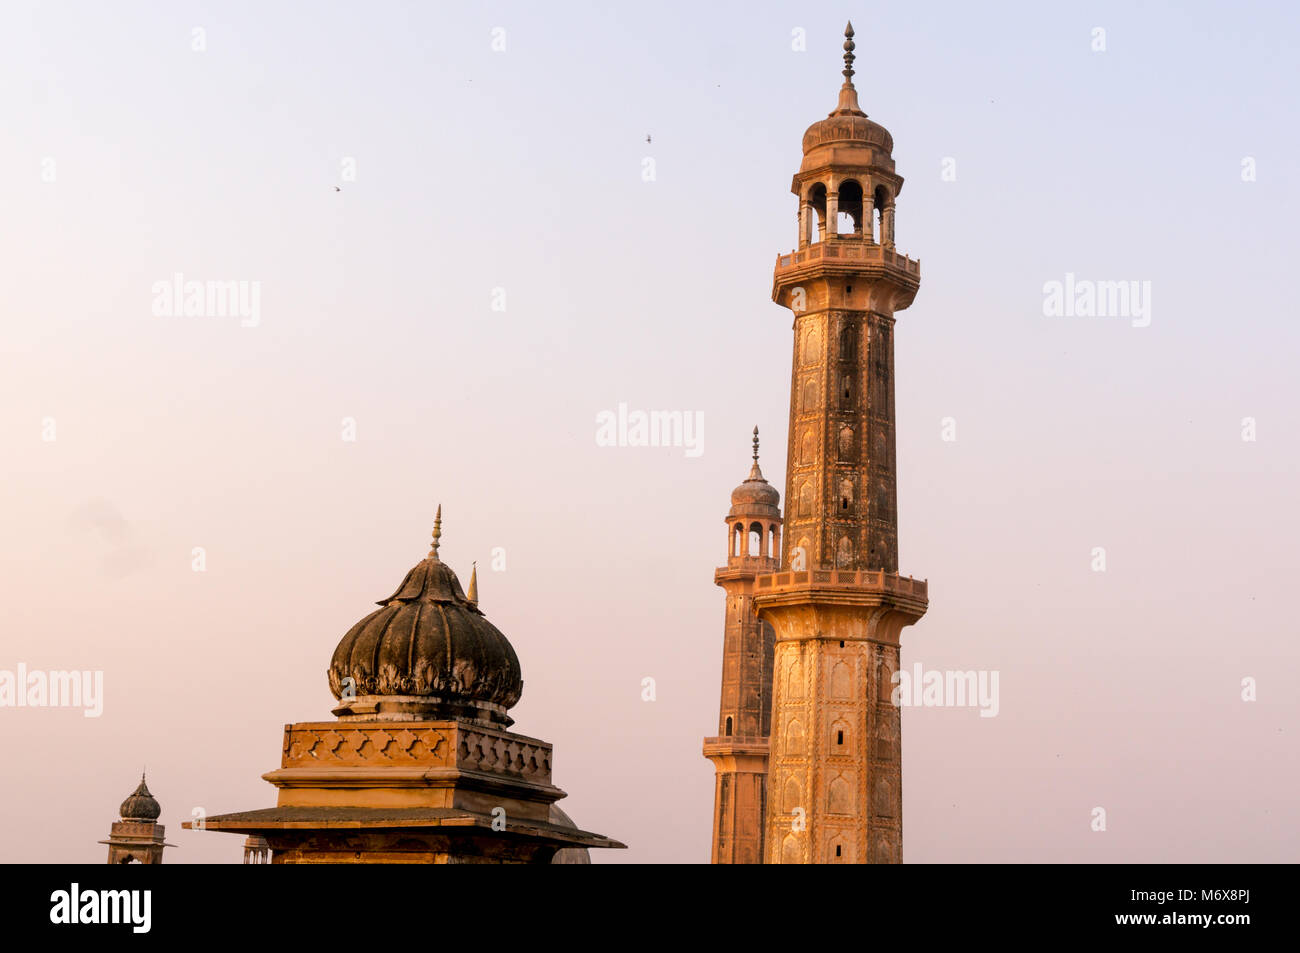 Plan du toit en dôme et les flèches ou de la réinsertion de la mosquée Asfi tiré de la célèbre toit de bara imambara dans l'Uttar Pradesh inde Lucknow Banque D'Images